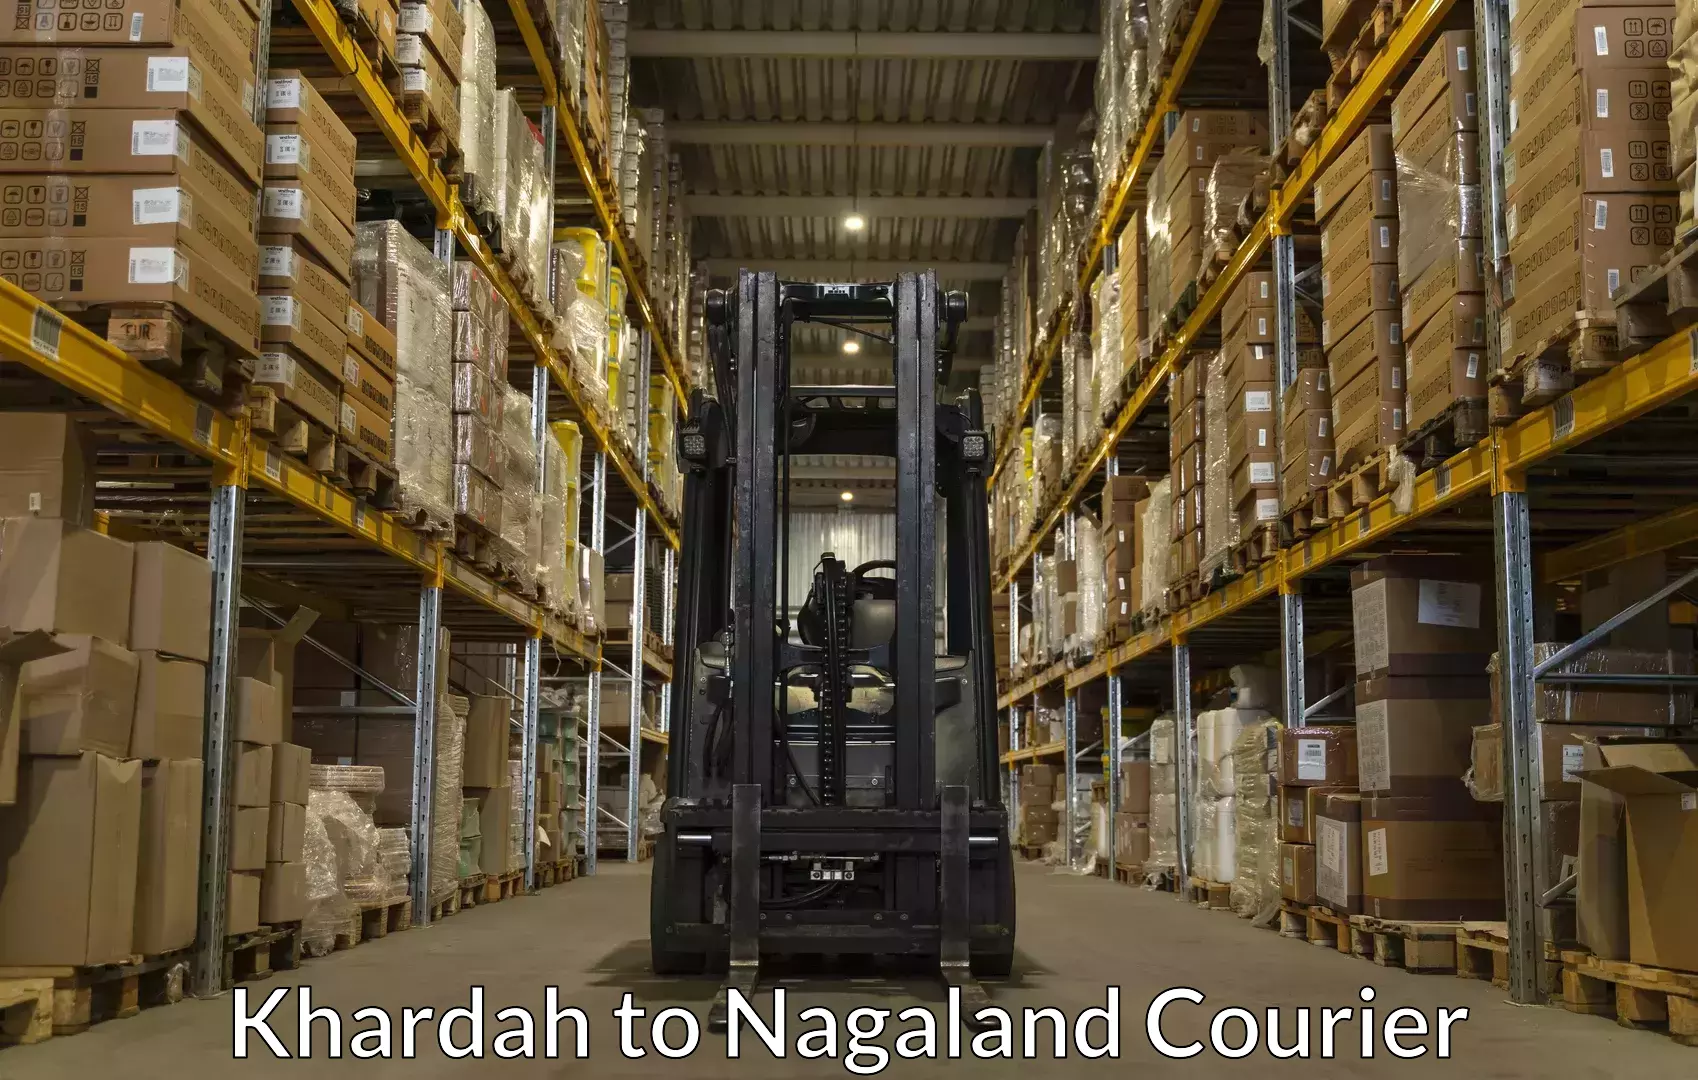 Luggage transfer service Khardah to Nagaland